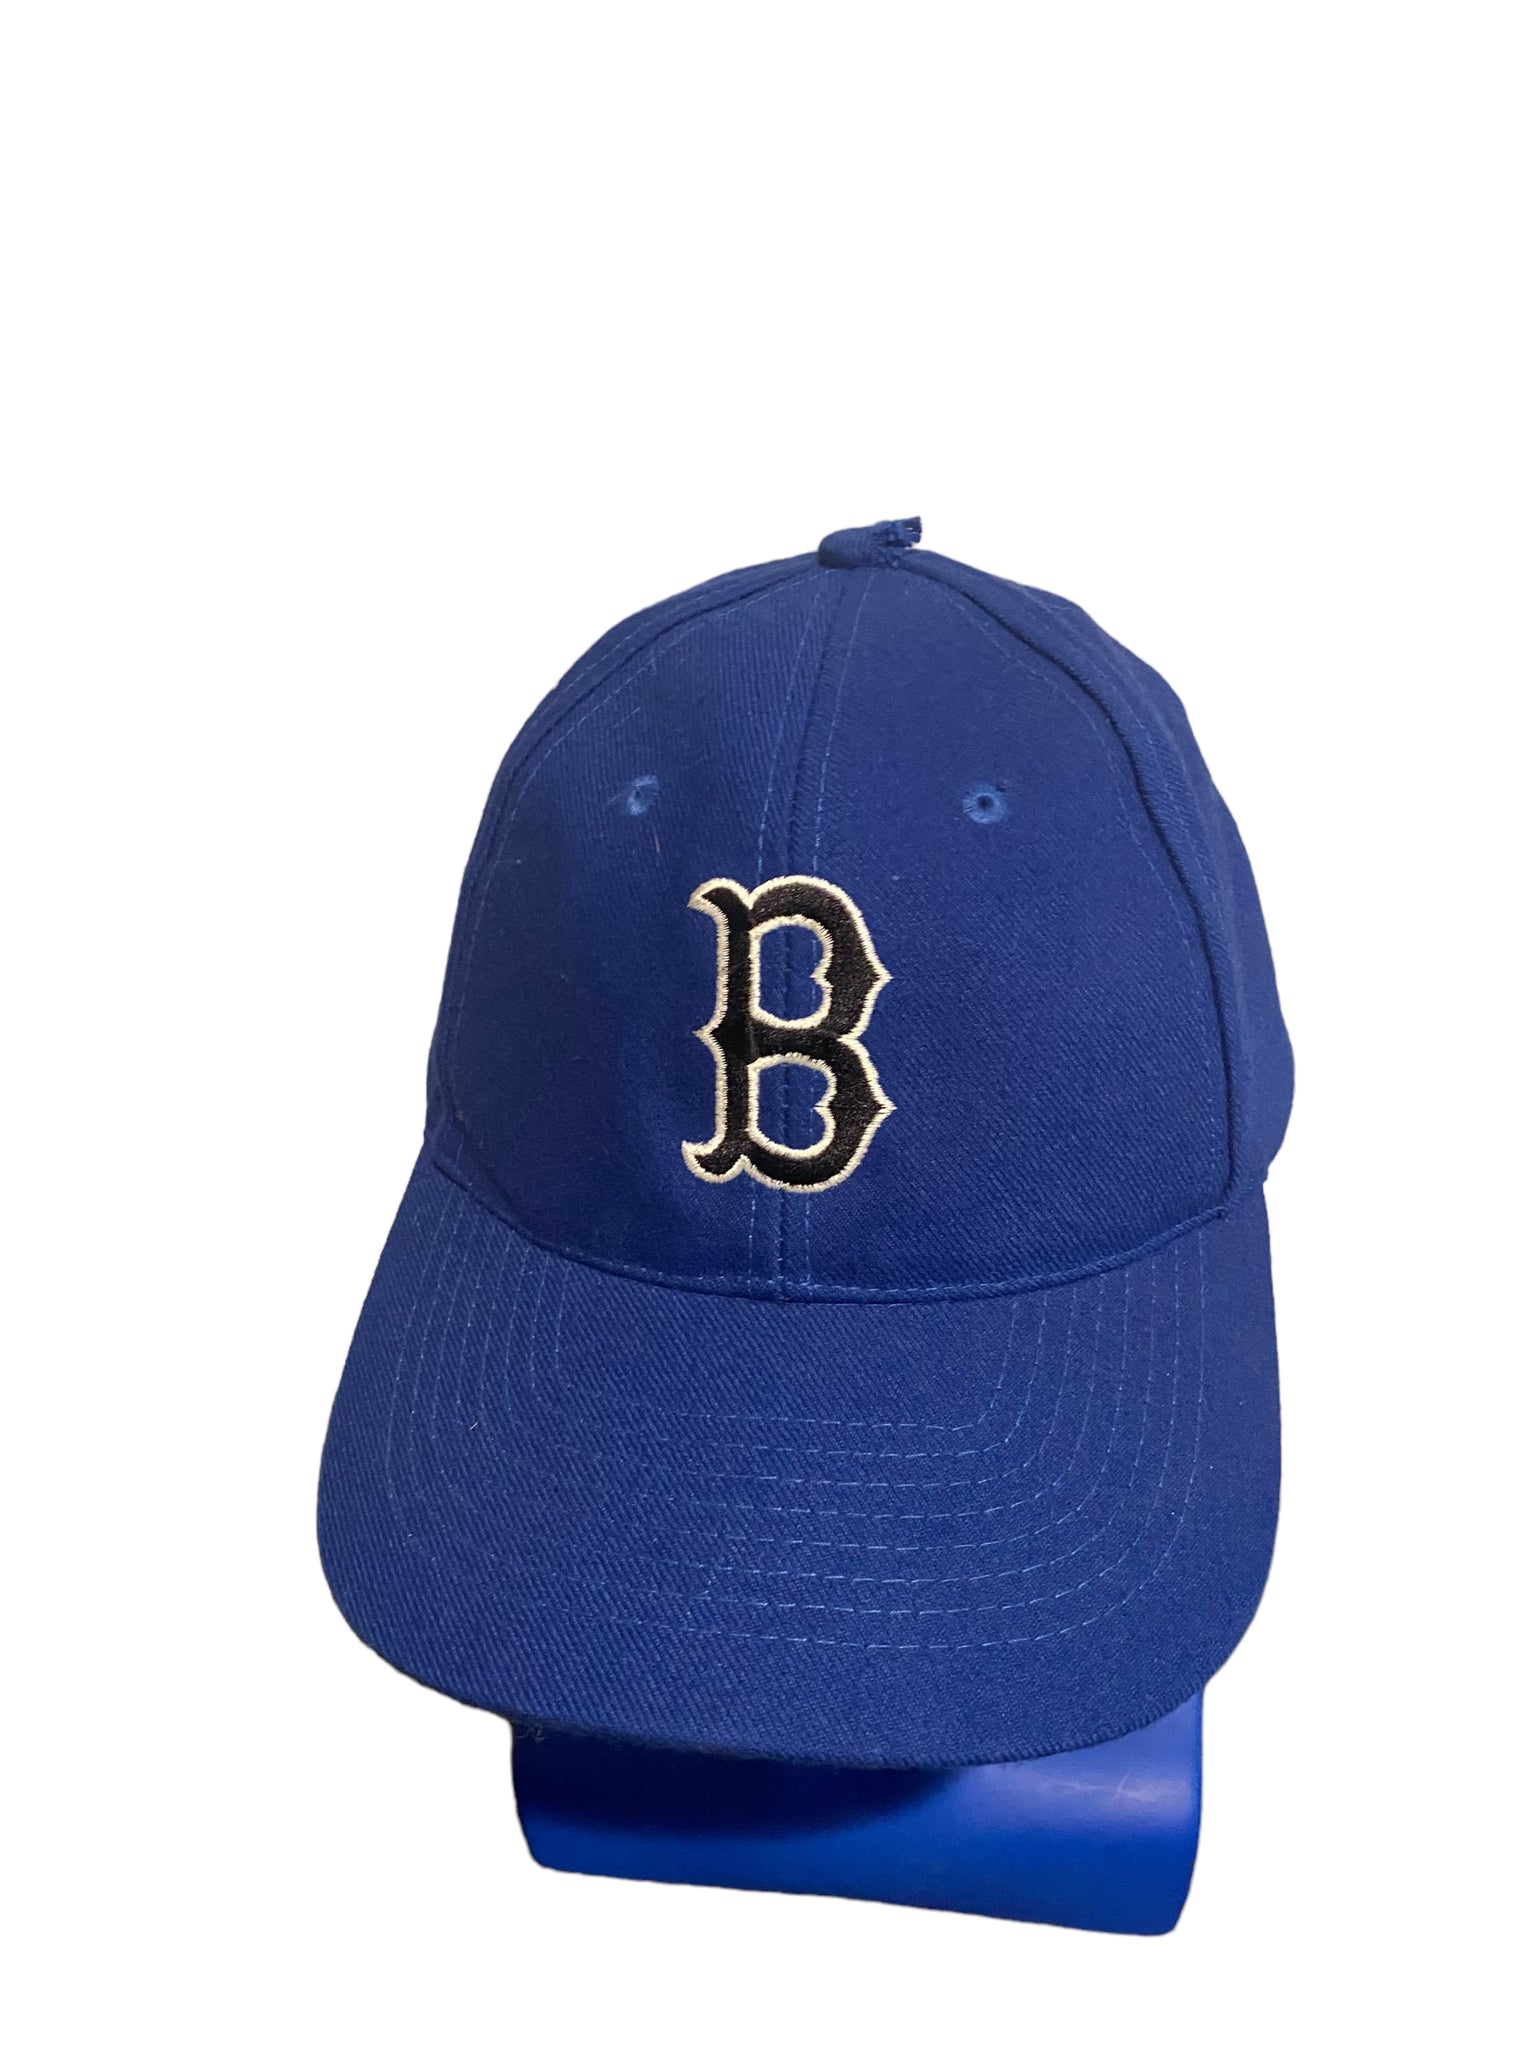 vintage kc hat brooklyn dodgers Embroidered Letter B snapback Hat